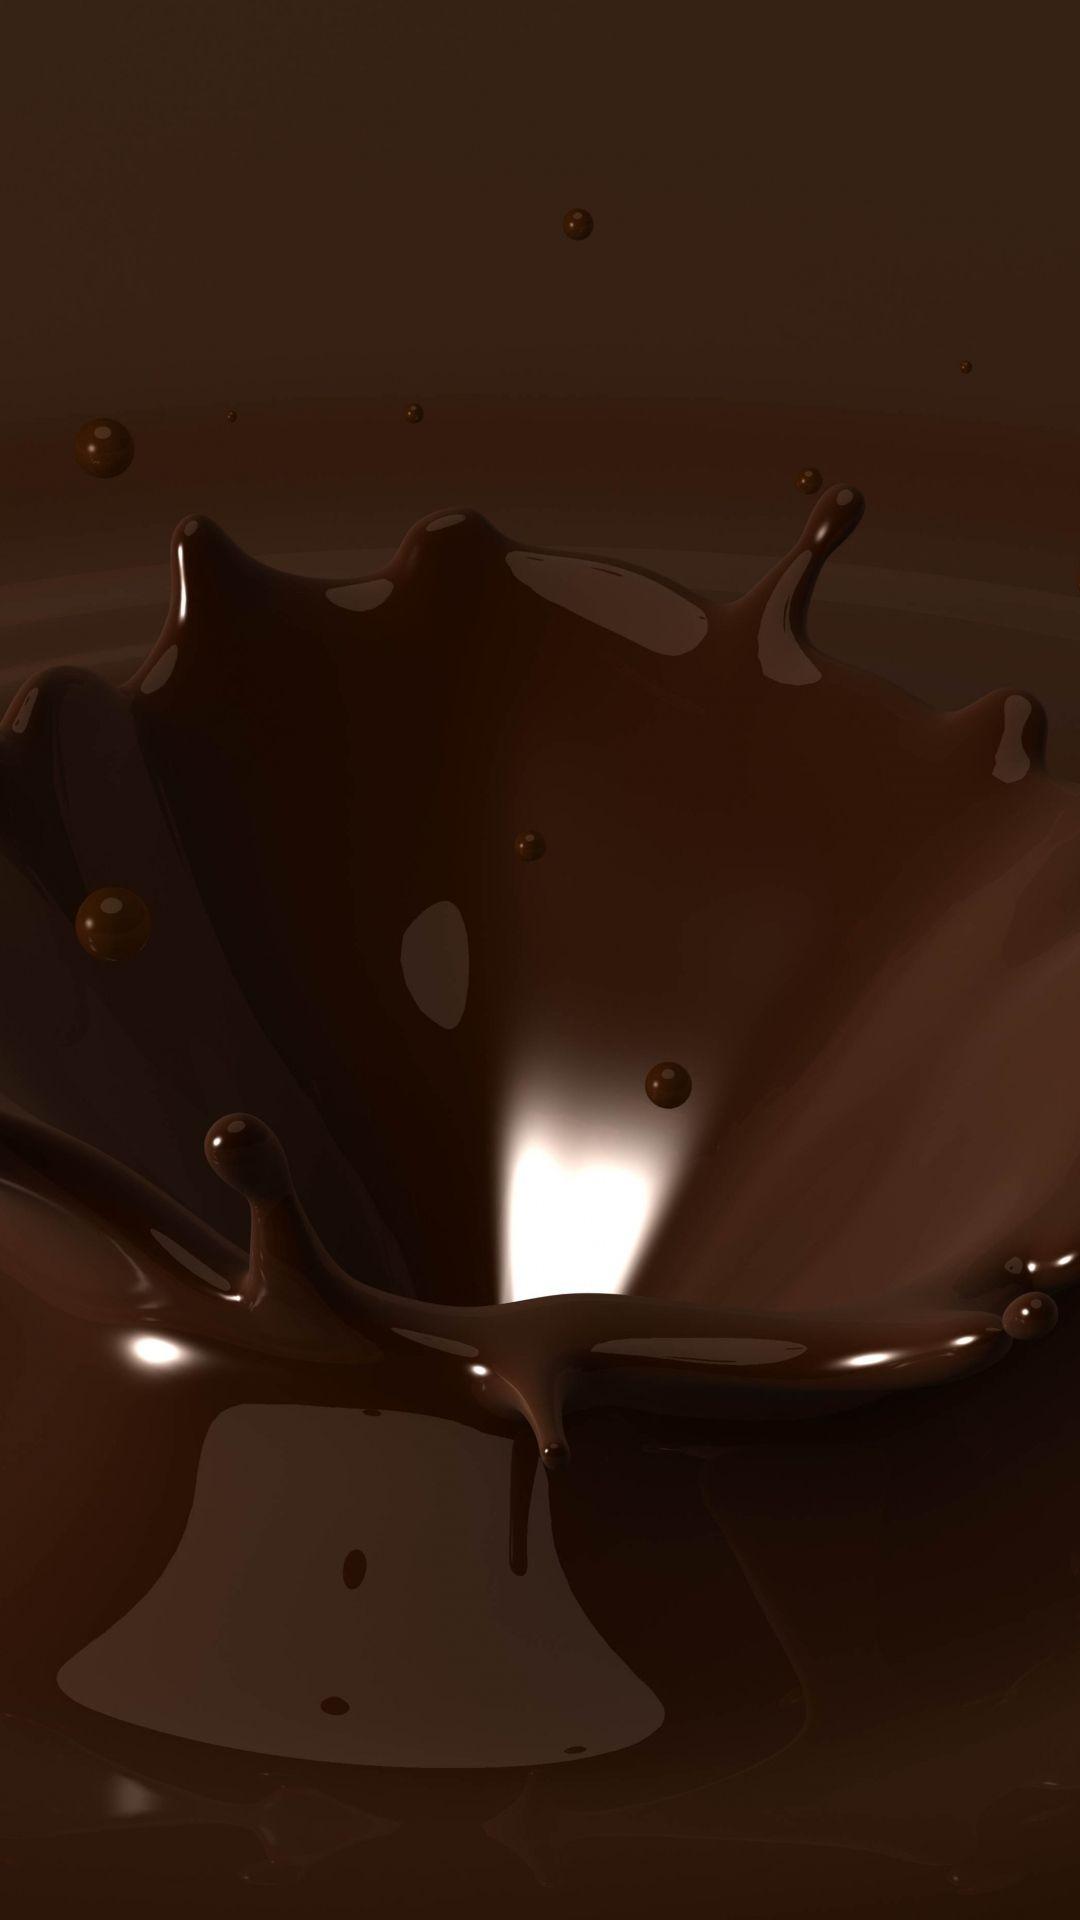 Dark Chocolate Wallpapers  Top Những Hình Ảnh Đẹp